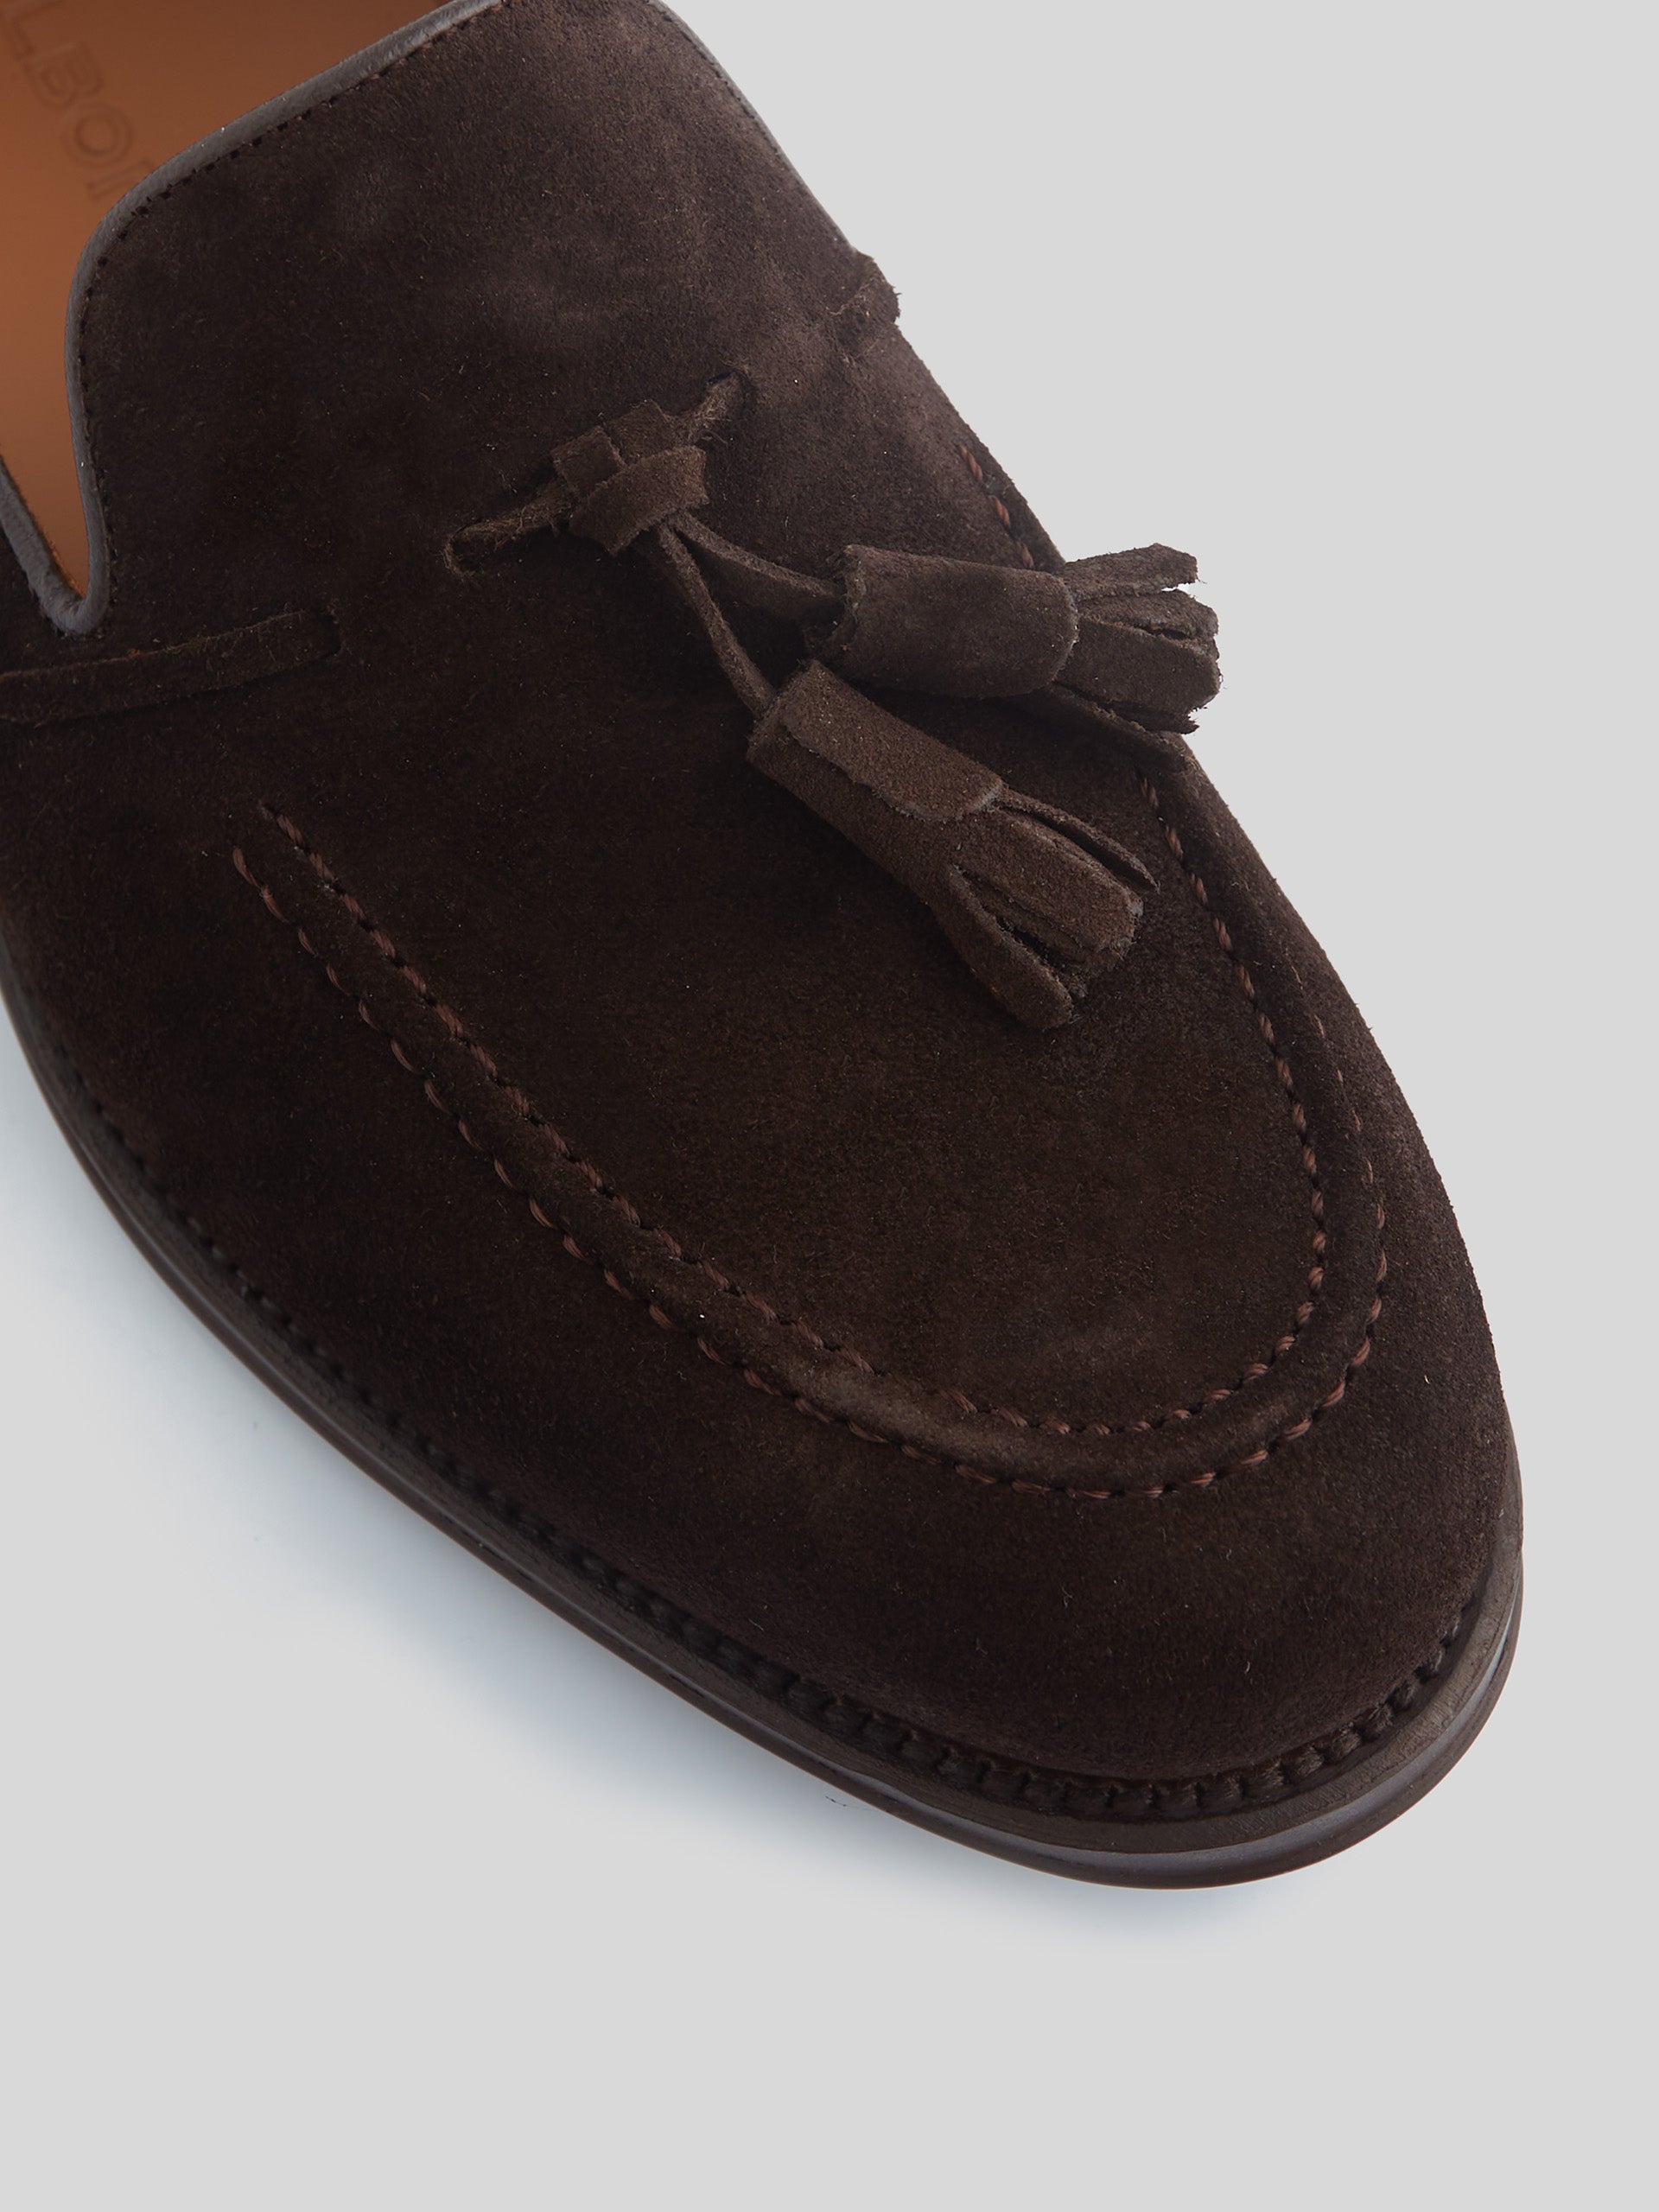 Zapato clasico borlas ante marron oscuro